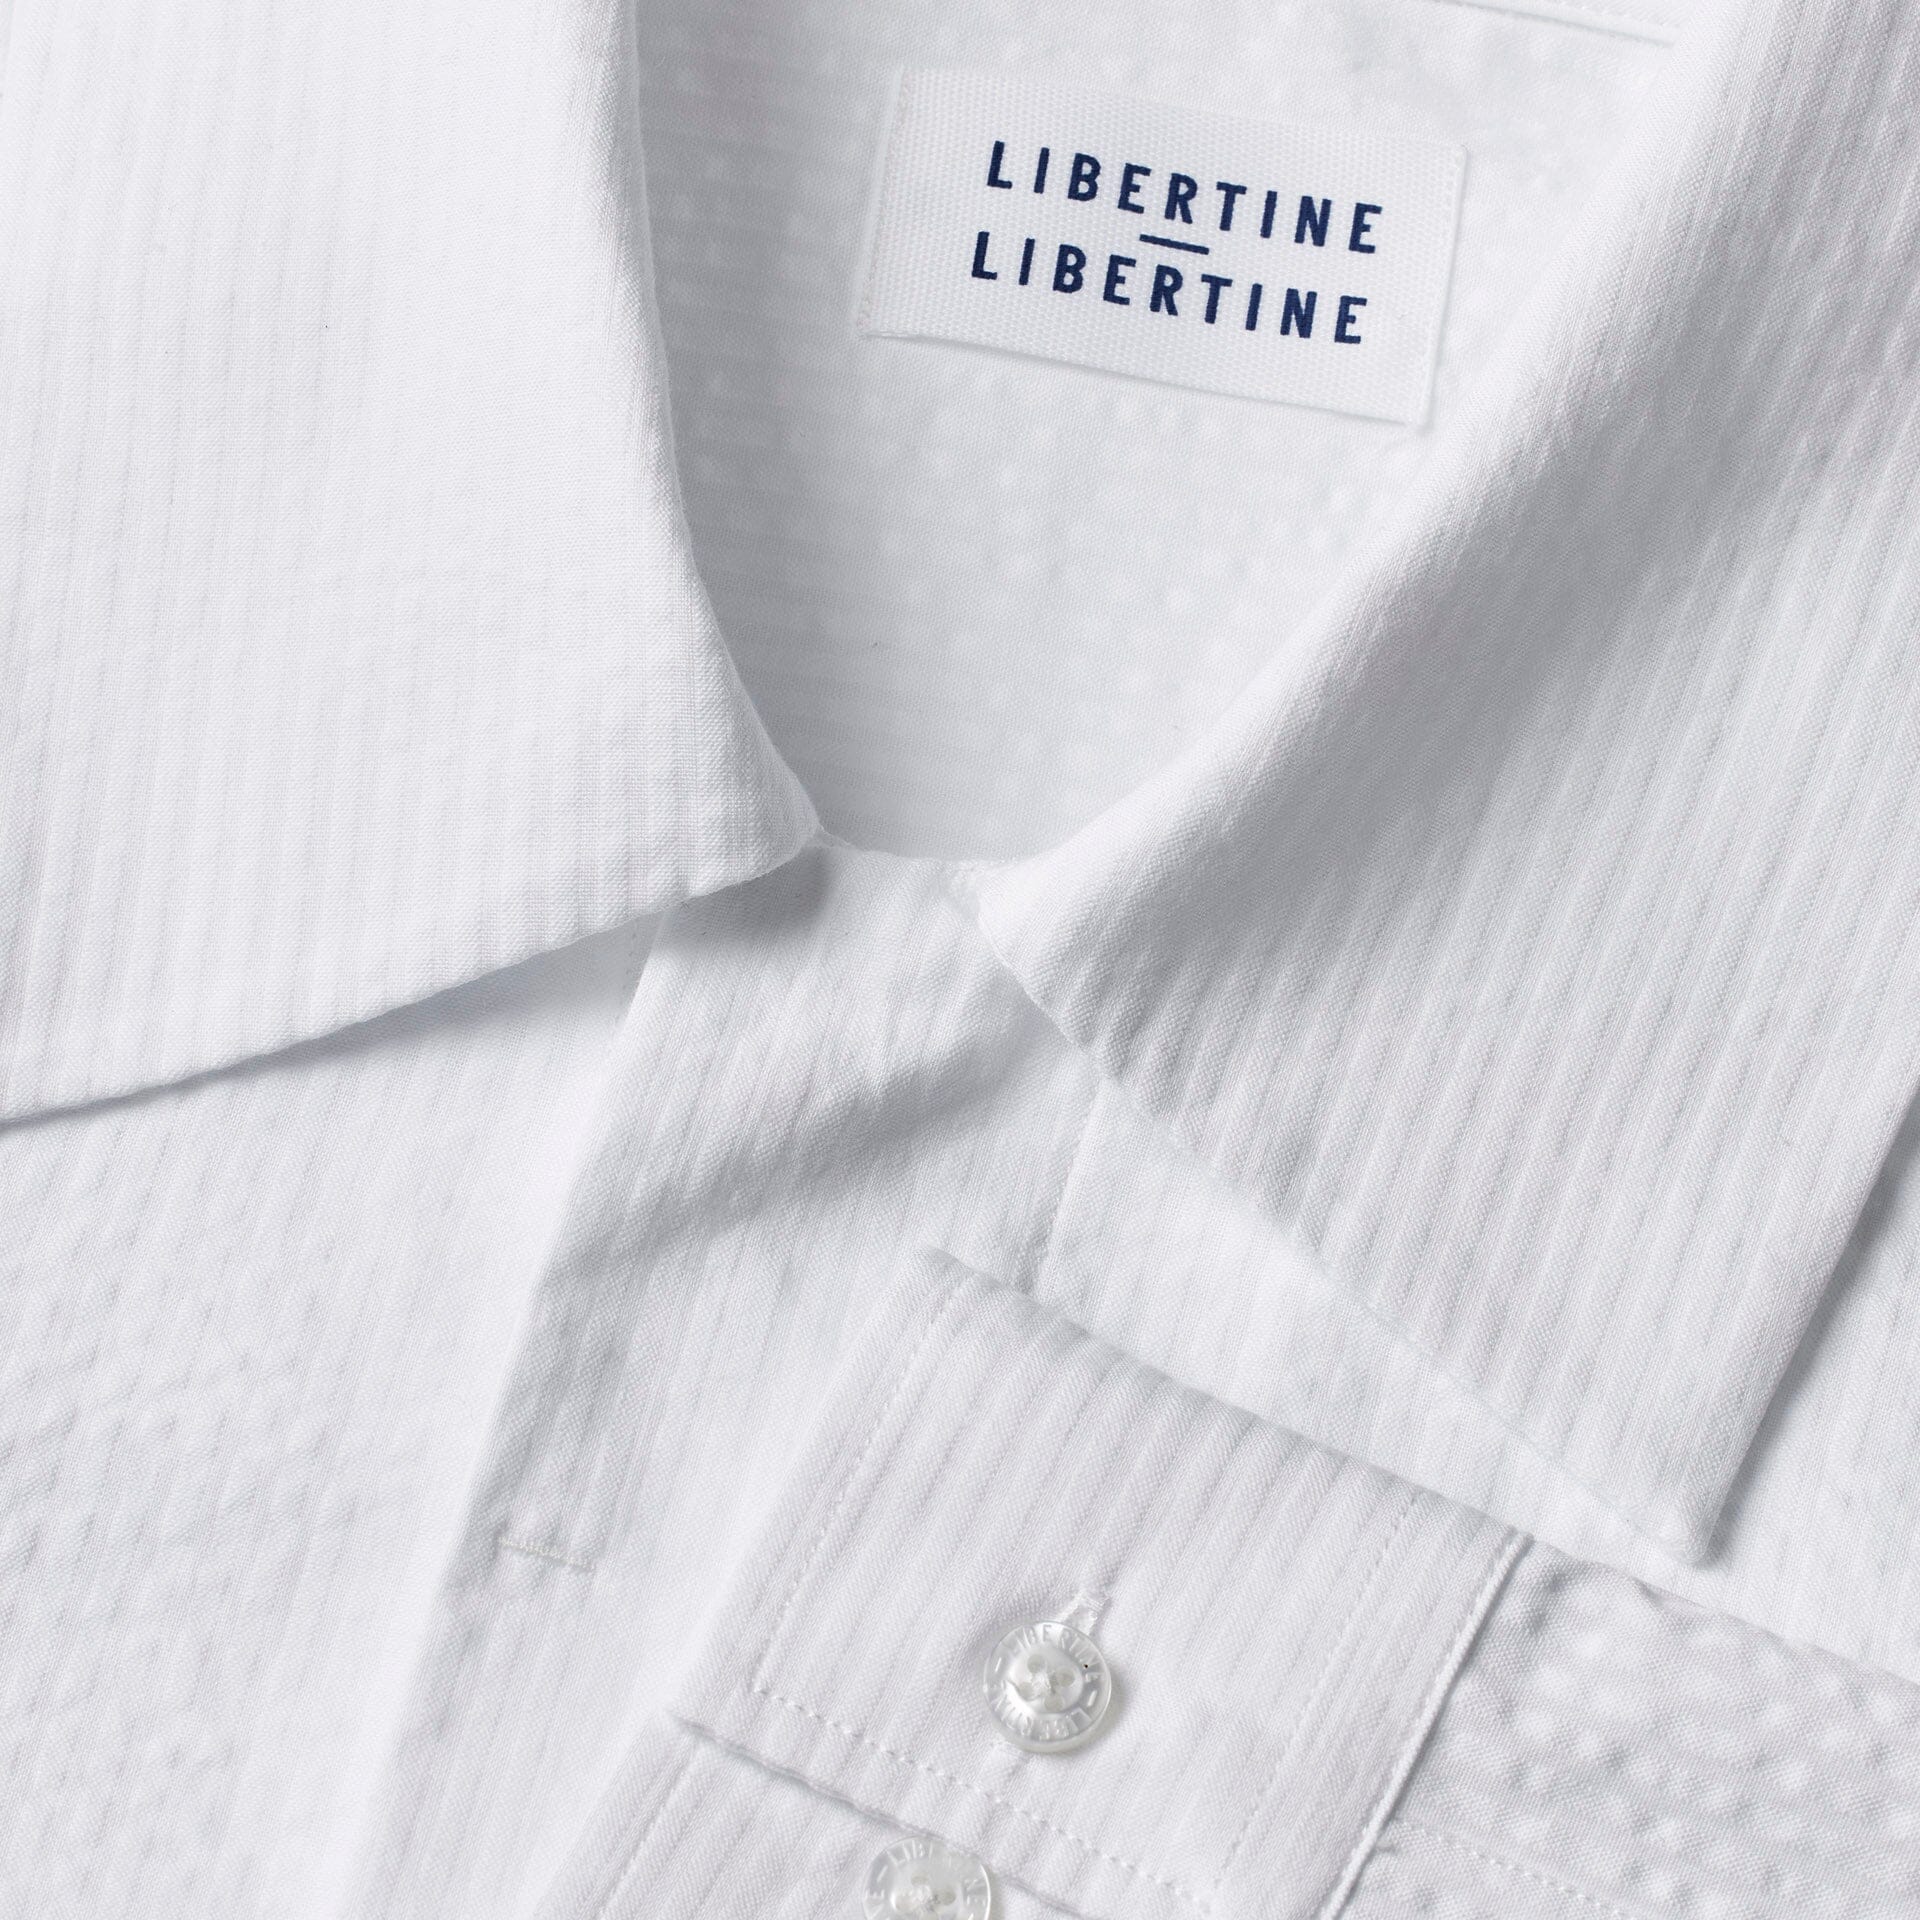 Libertine-Libertine Domain Shirt - White Shirt Libertine-Libertine 